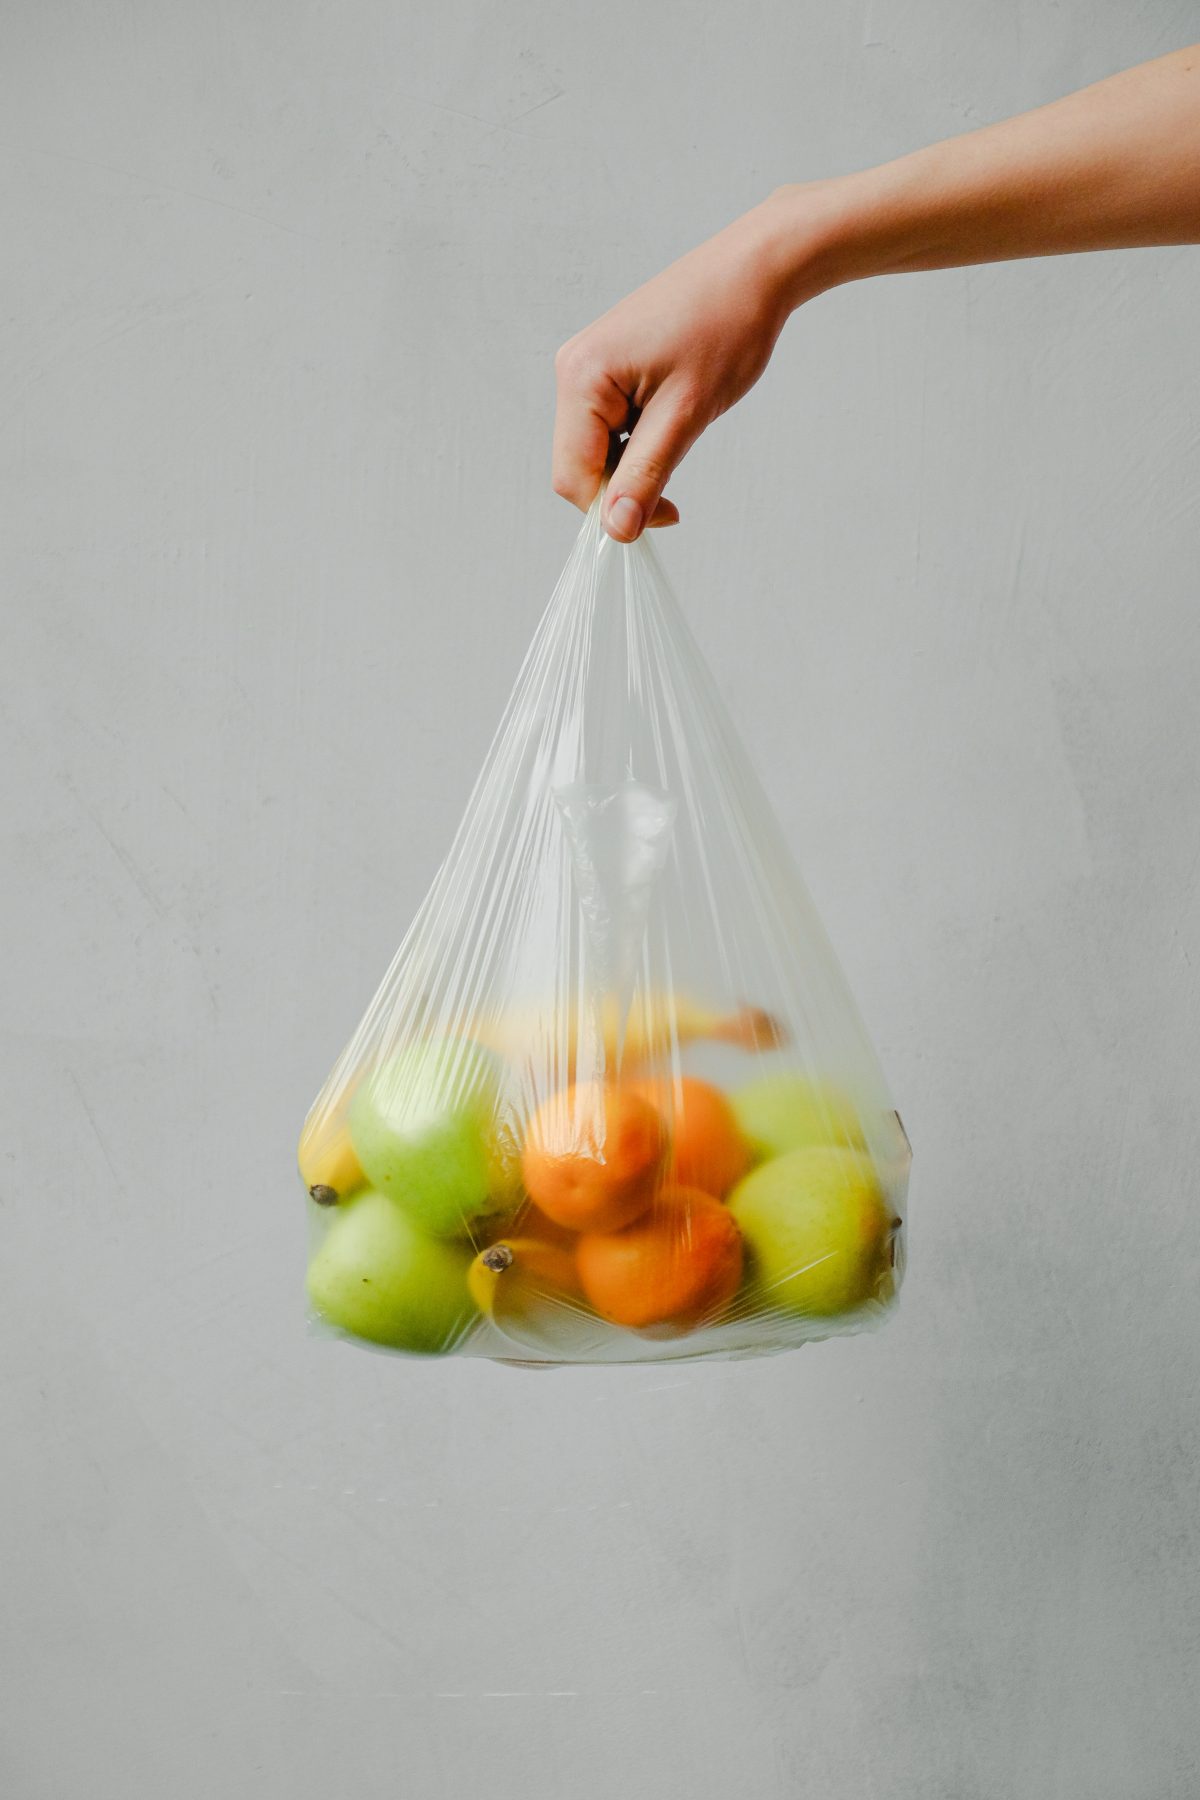 Parduotuvėse naudojamas plastikas virsta maišeliais ir automobilių detalėmis